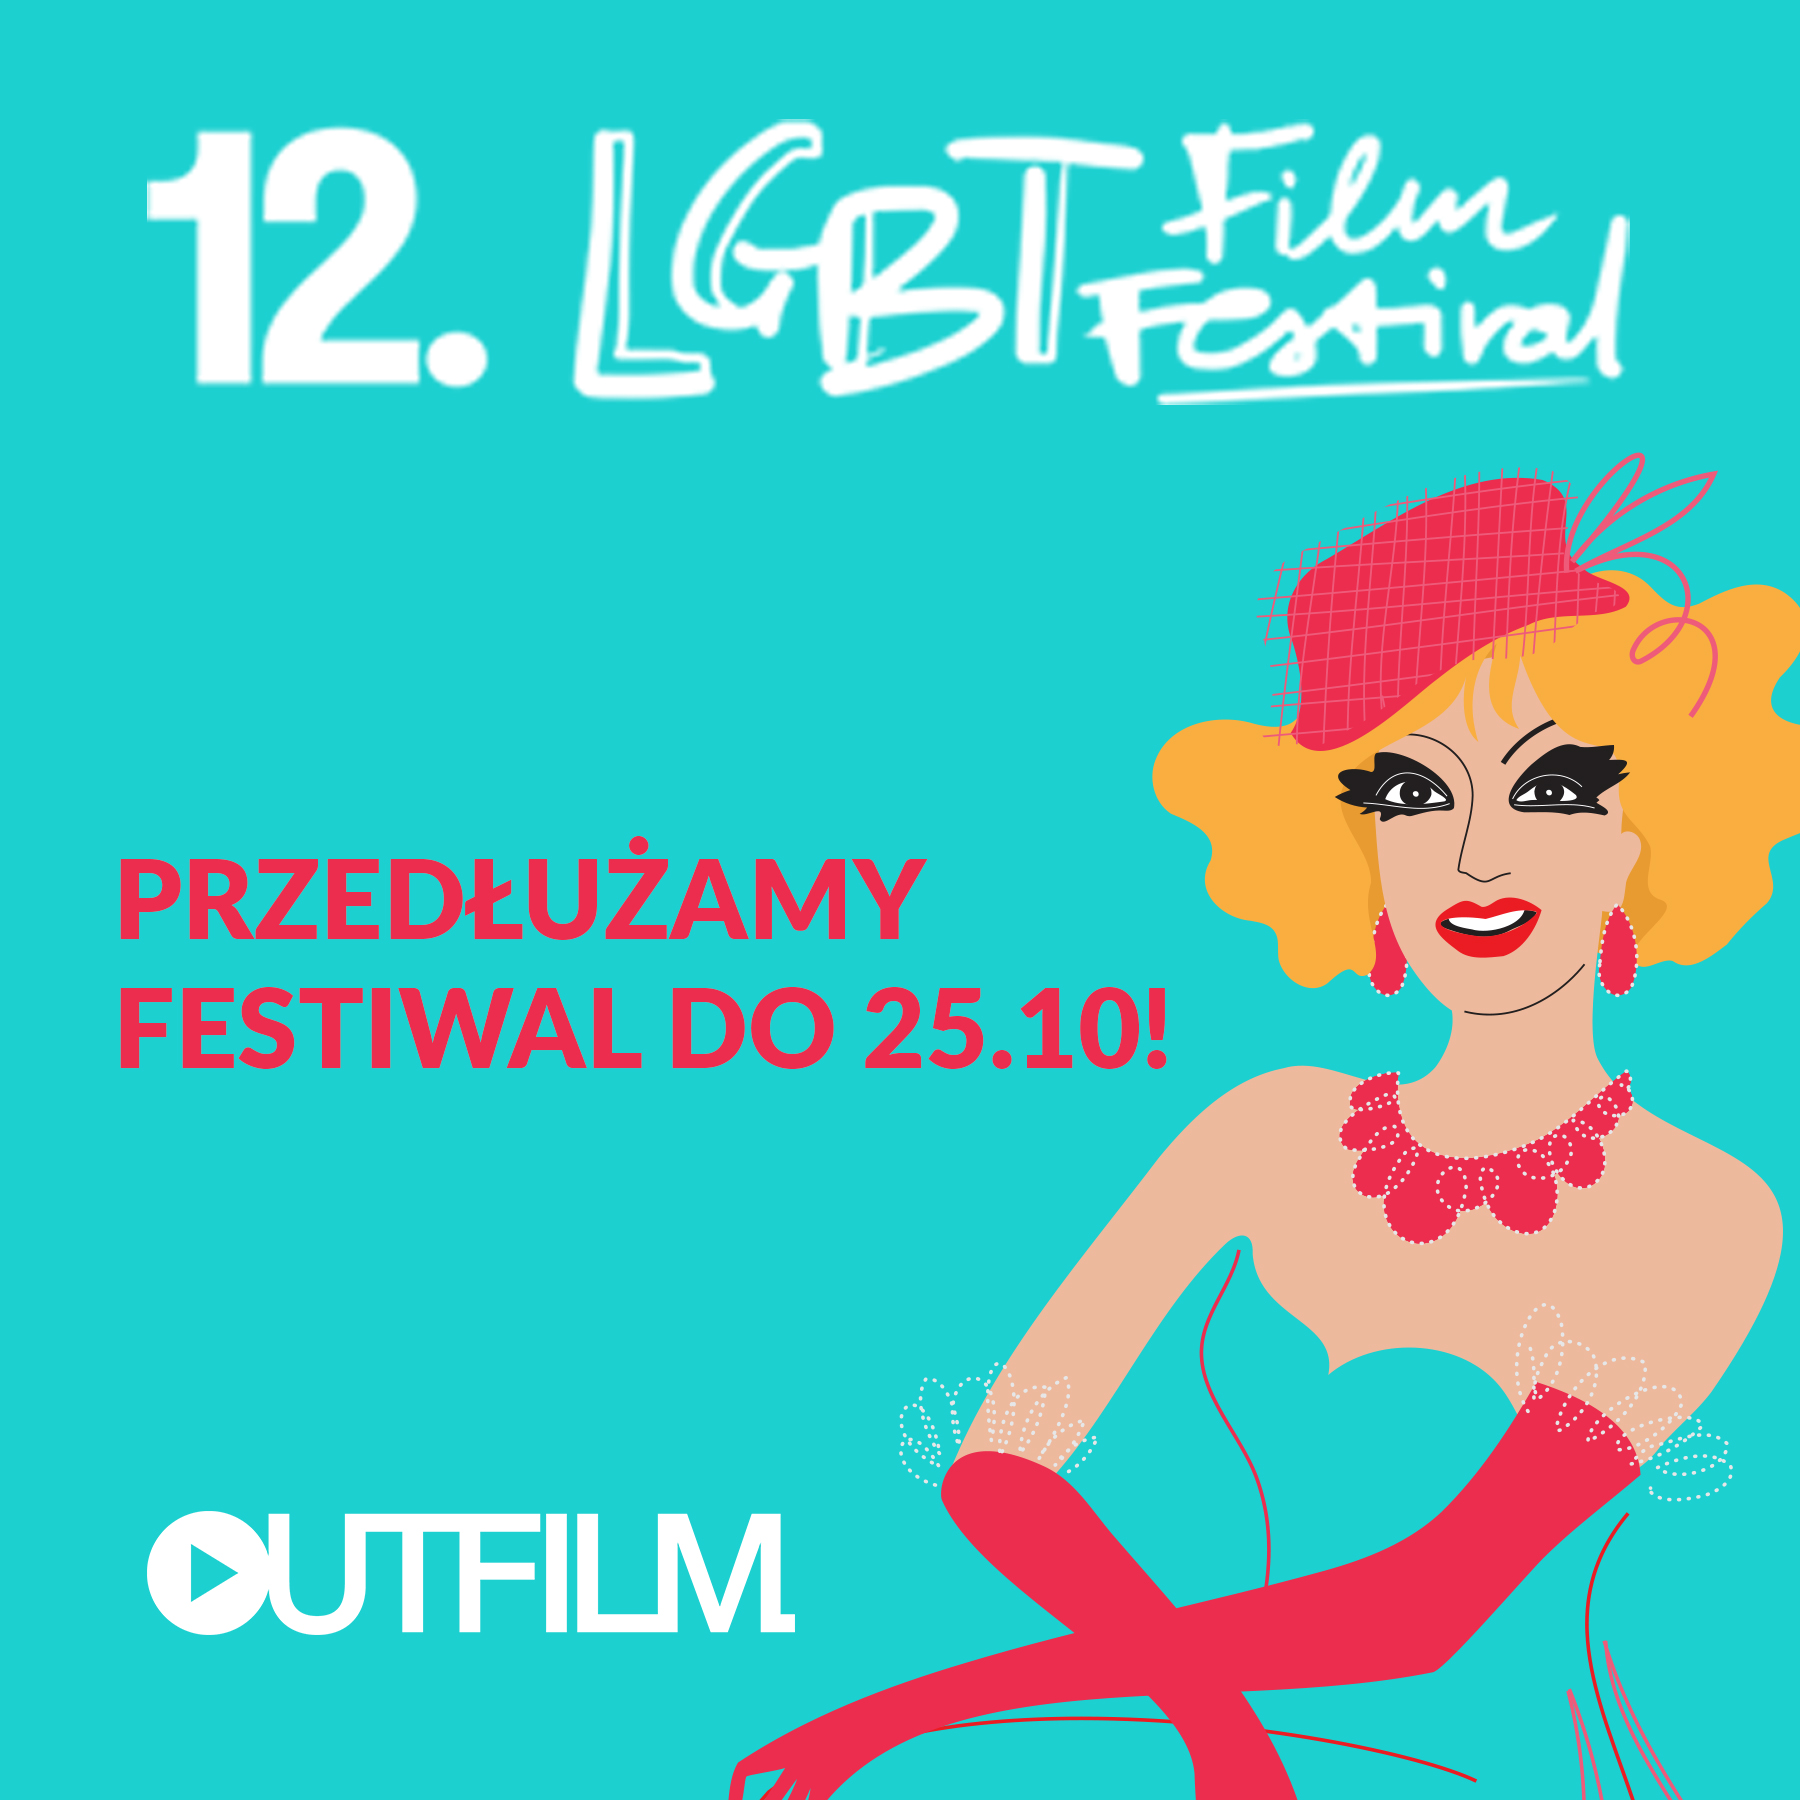 Lgbt Film Festival Jeszcze Nie Zwalnia Outfilm